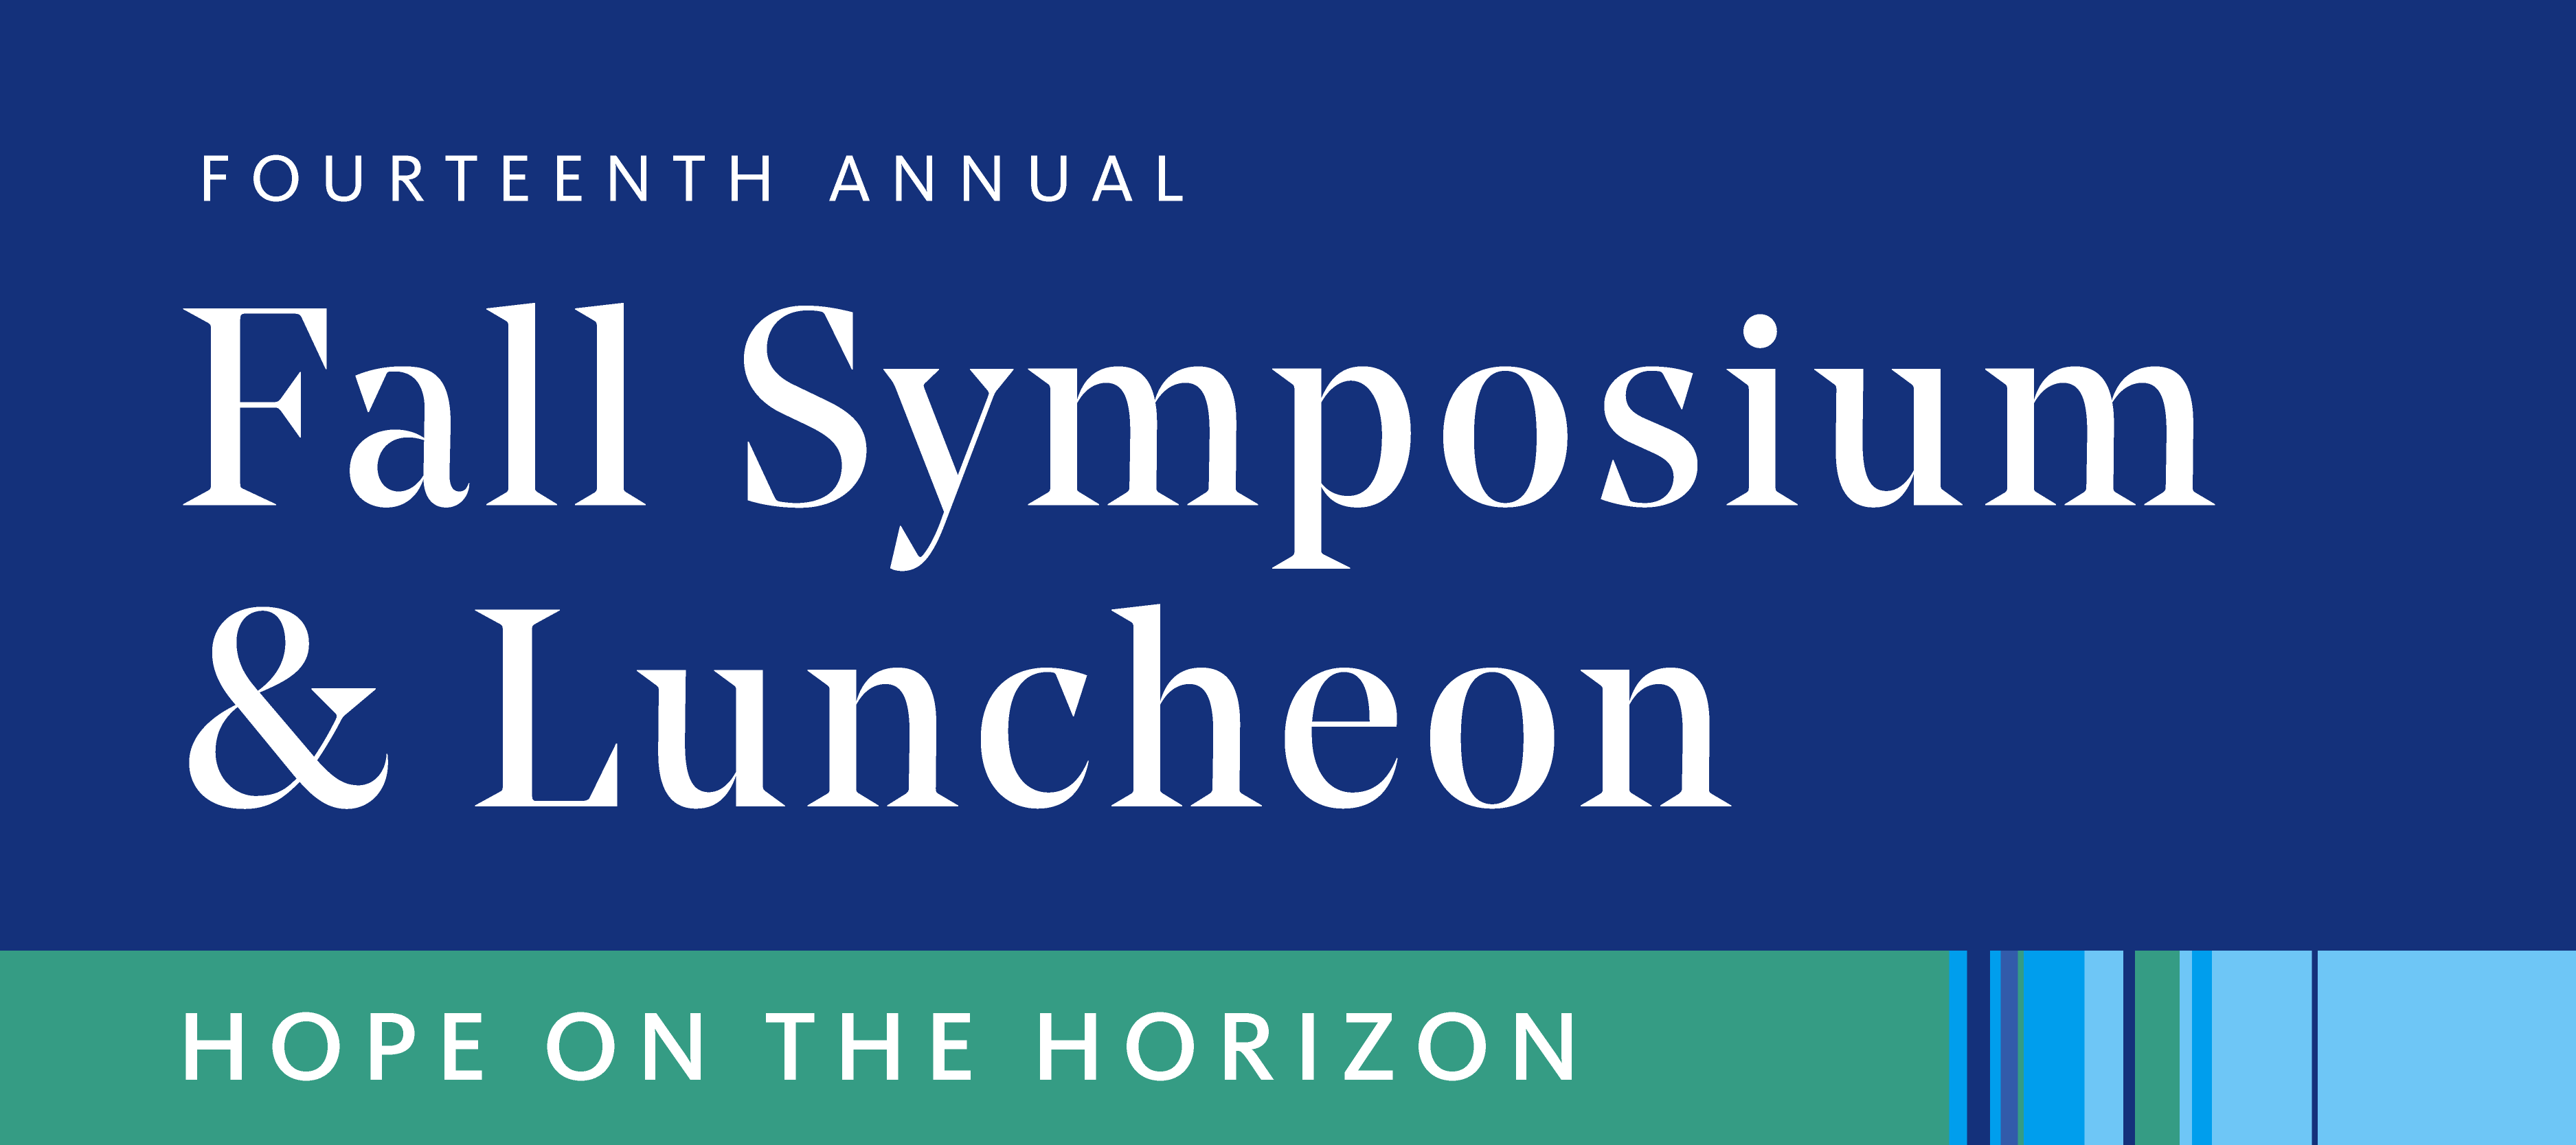 Fourteenth Annual Fall Symposium & Luncheon